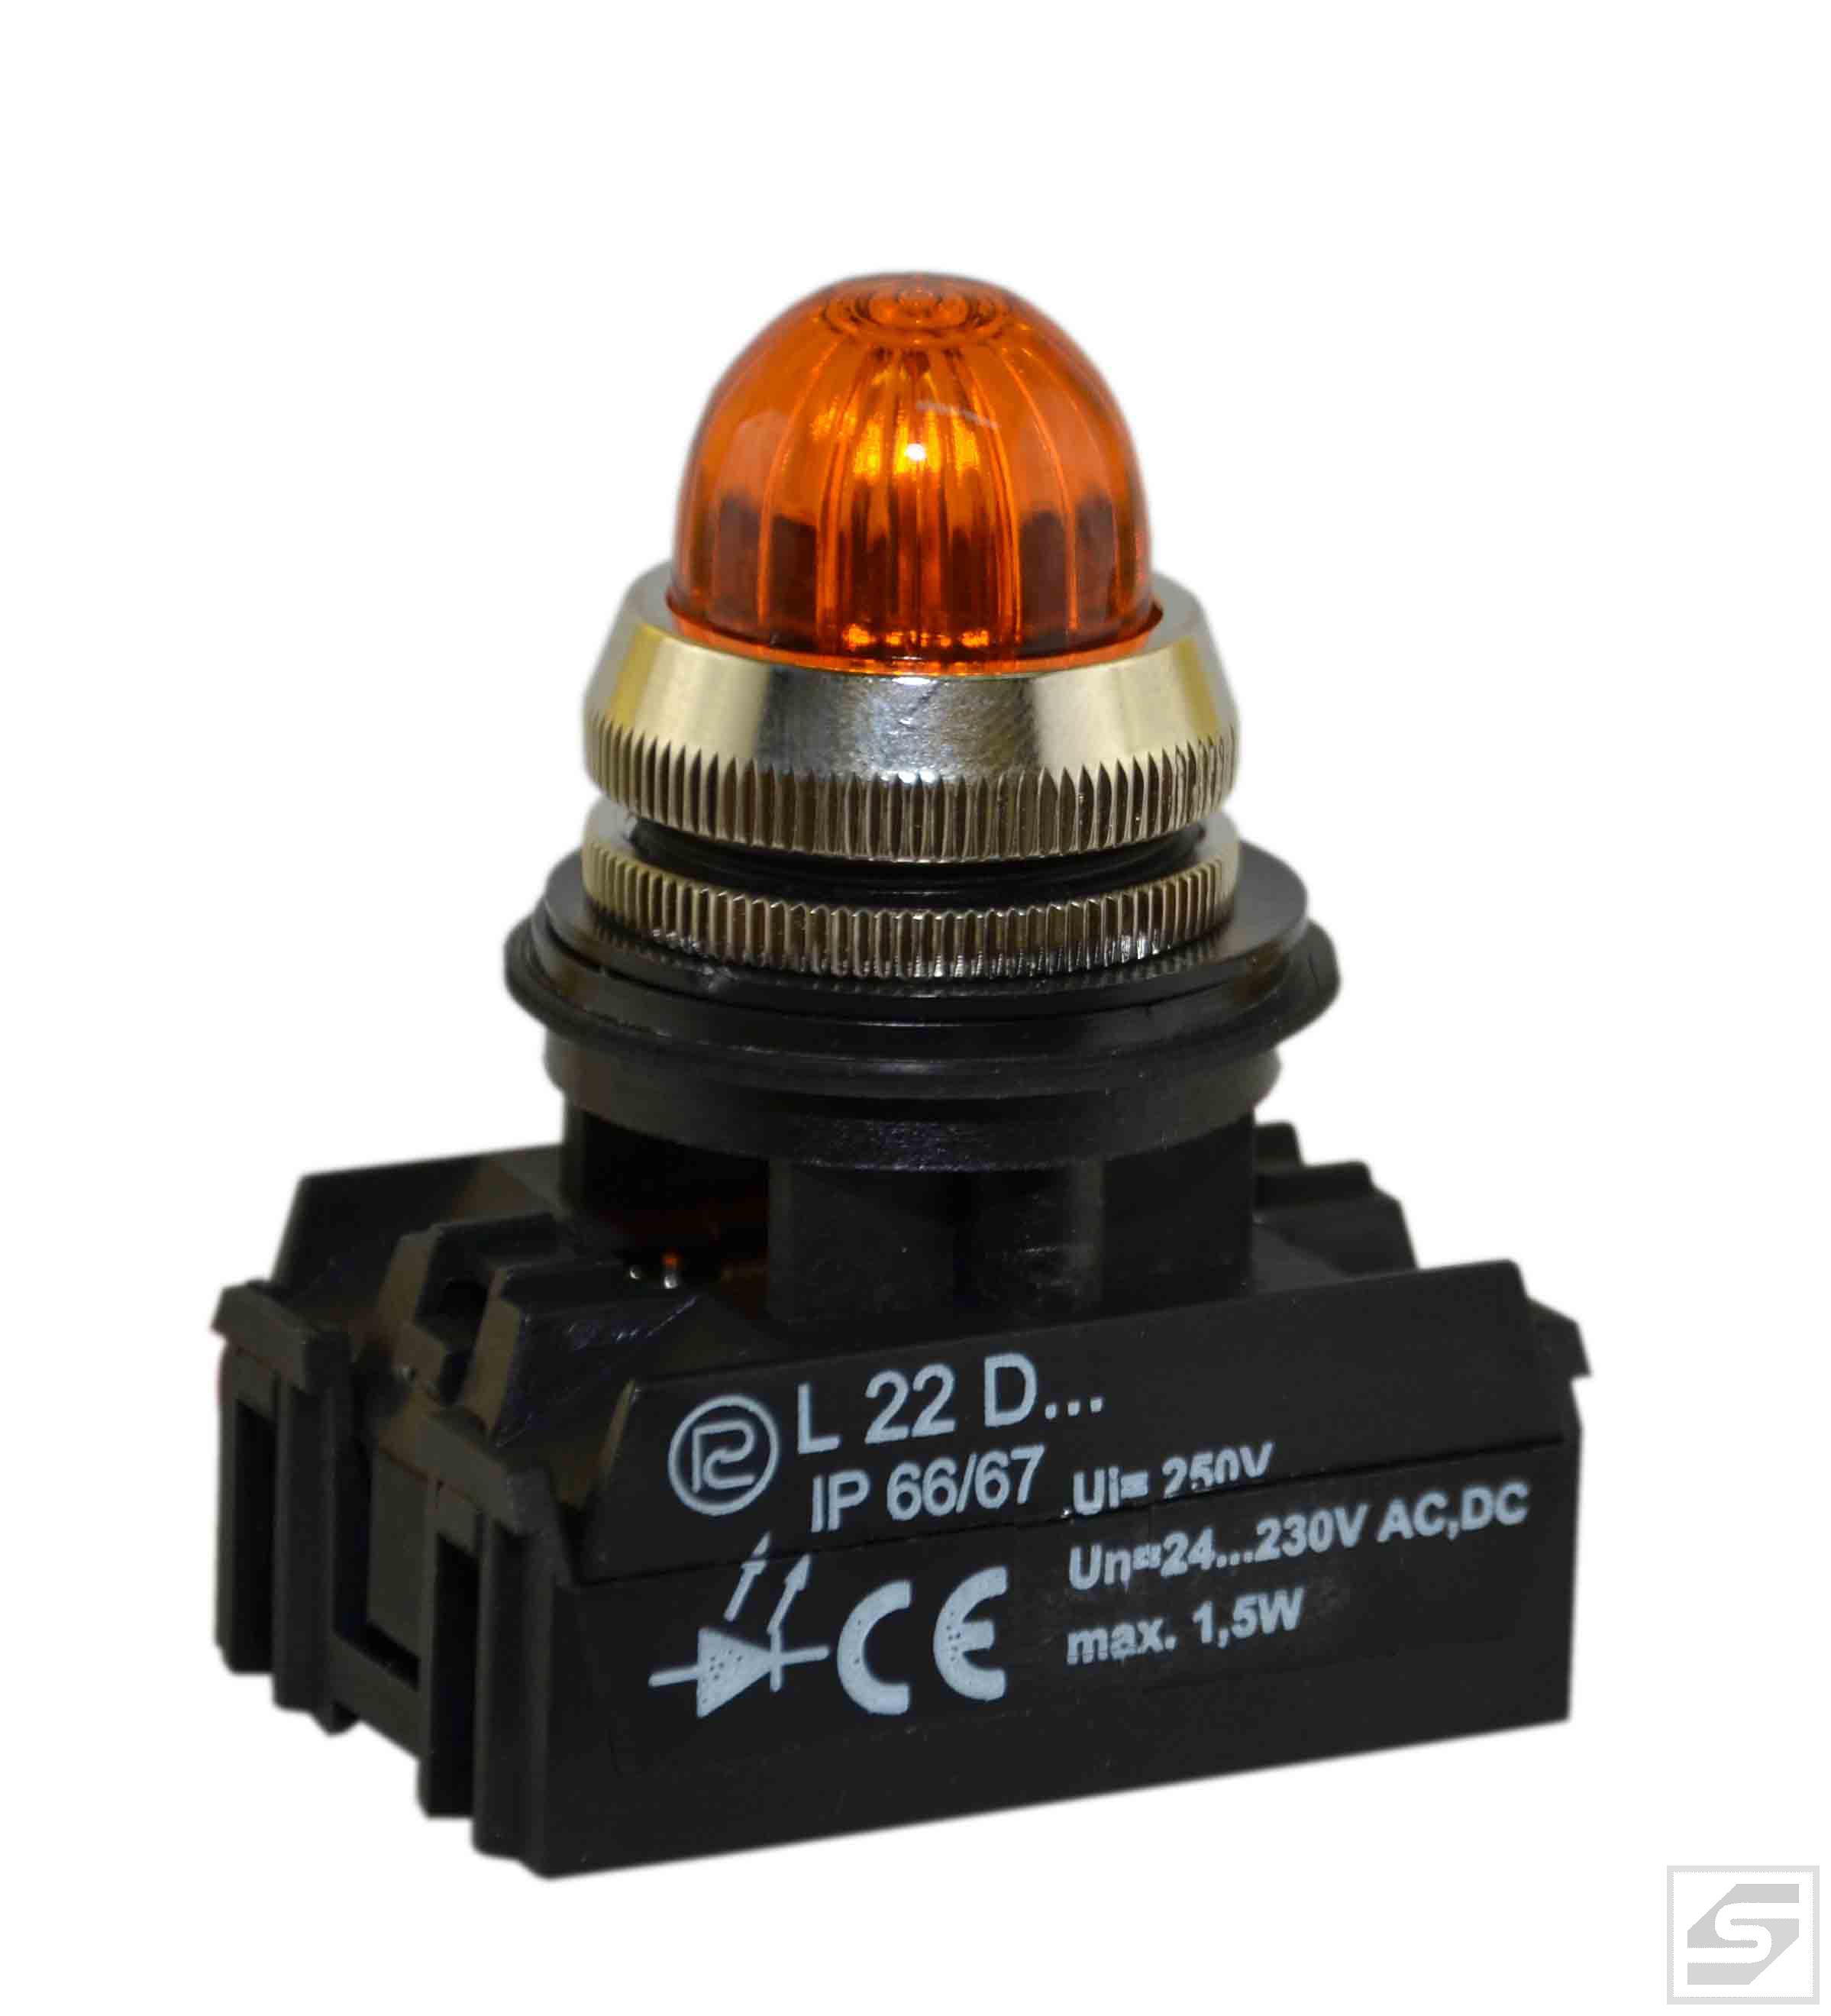 Lampka LED L22GDg 24-230VAC/DC;22mm żółta;max.1.5W;SN-PROMET;IP66/67